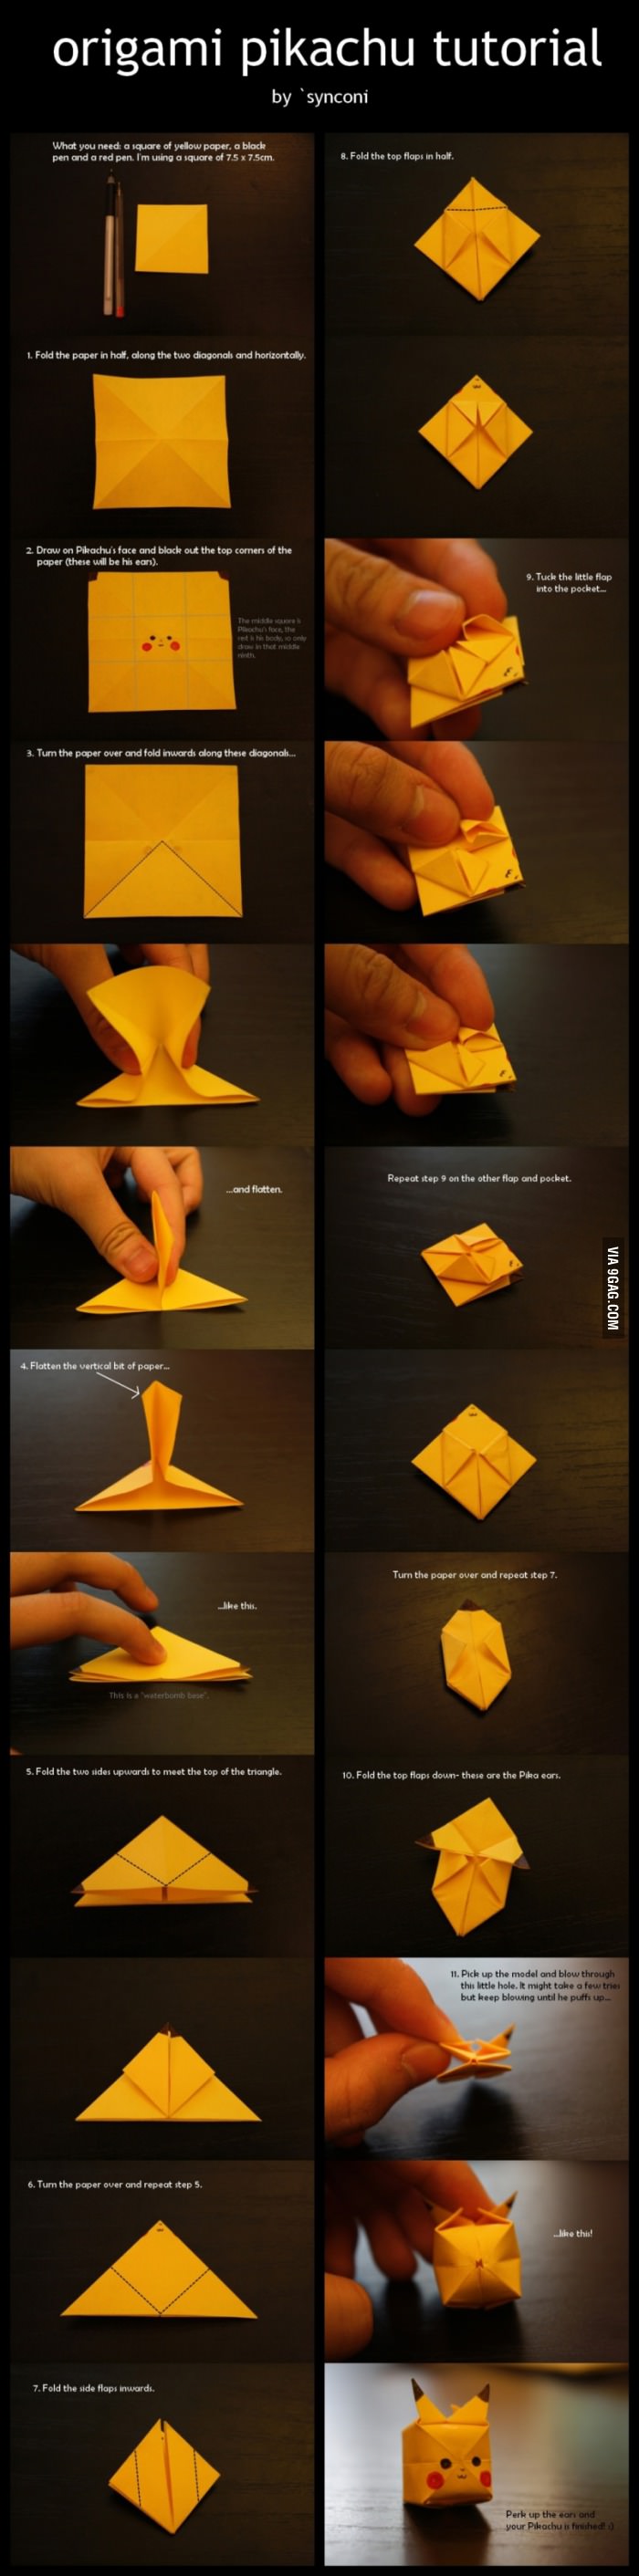 pikachu origami